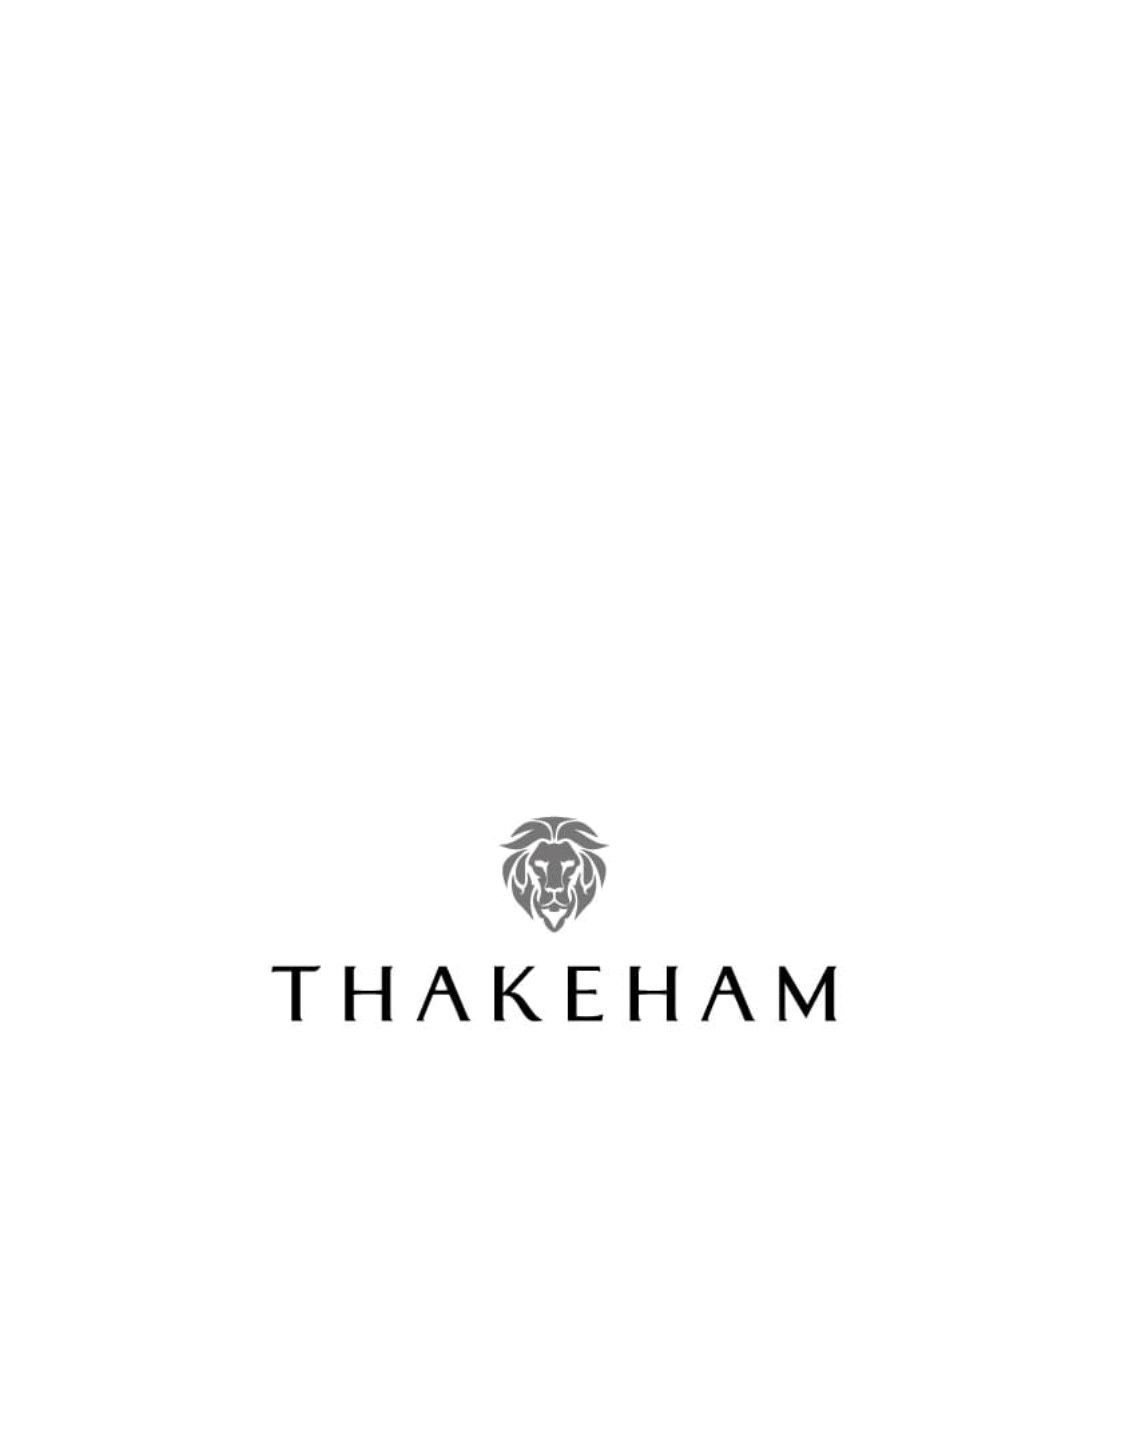 Thakeham